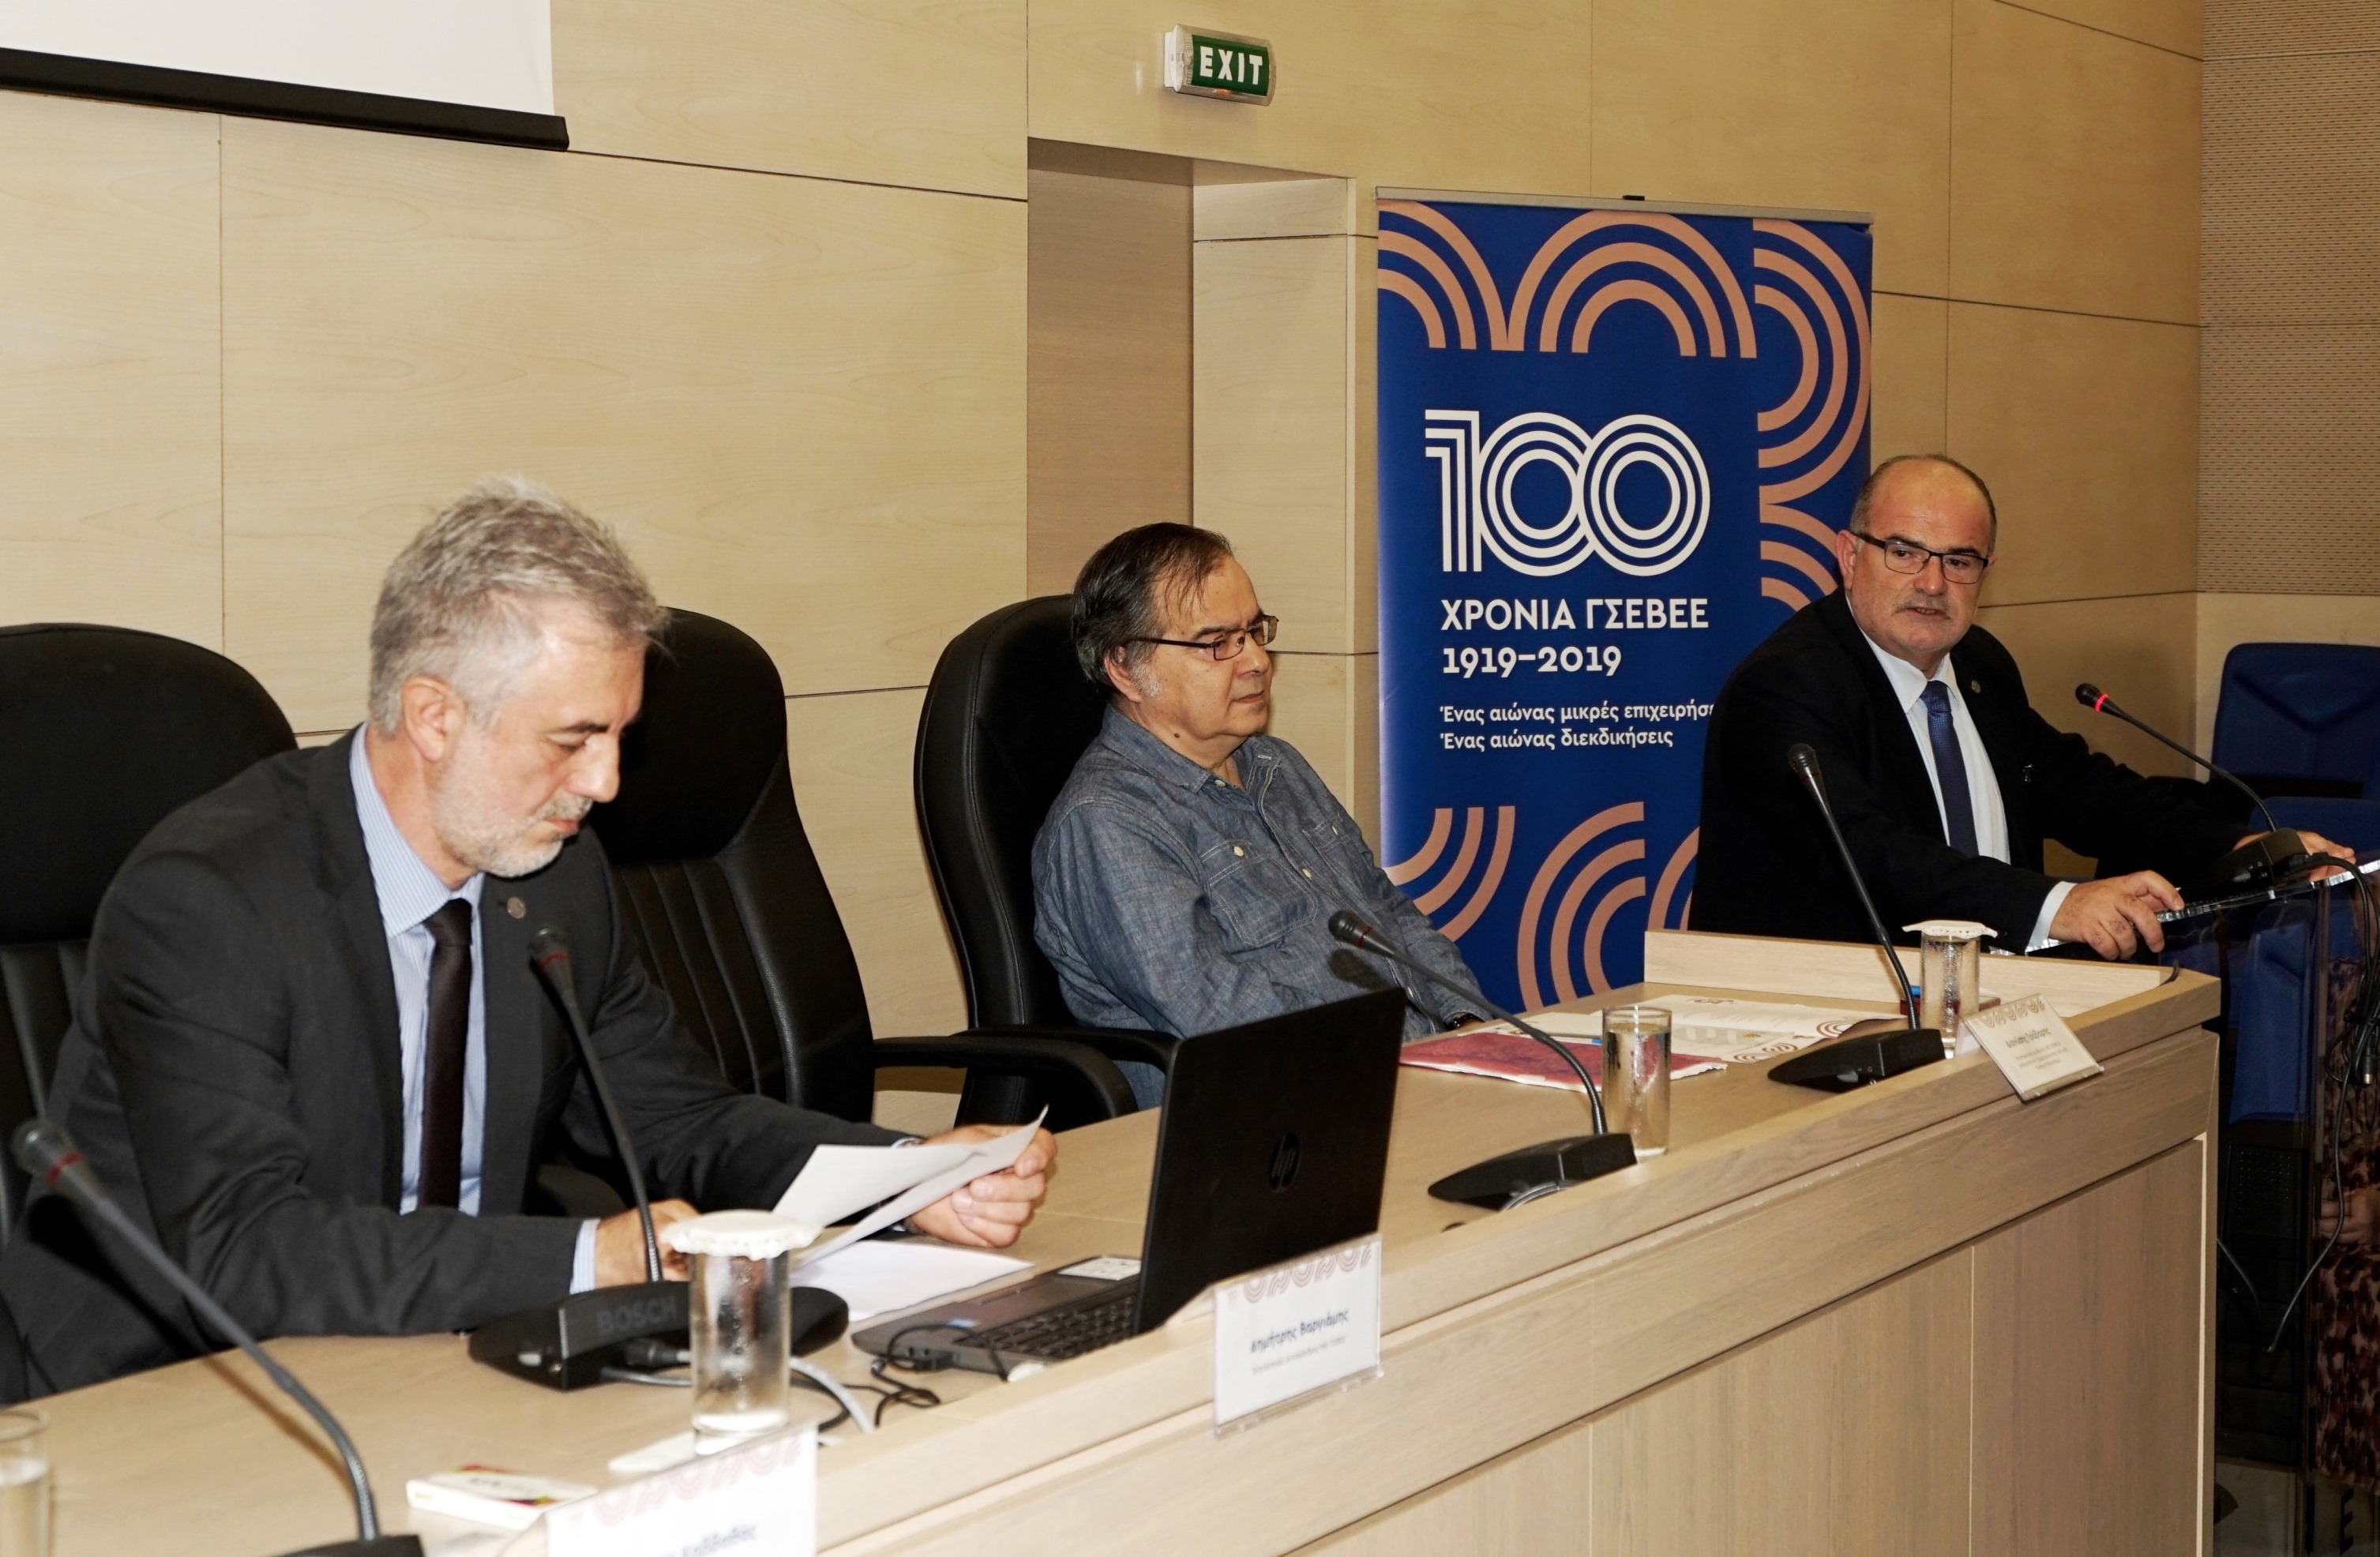 Έκθεση και επιστημονικό συνέδριο: «ΓΣΕΒΕΕ 1919-2019, ένας αιώνας μικρές  επιχειρήσεις, ένας αιώνας διεκδικήσεις» - EEA